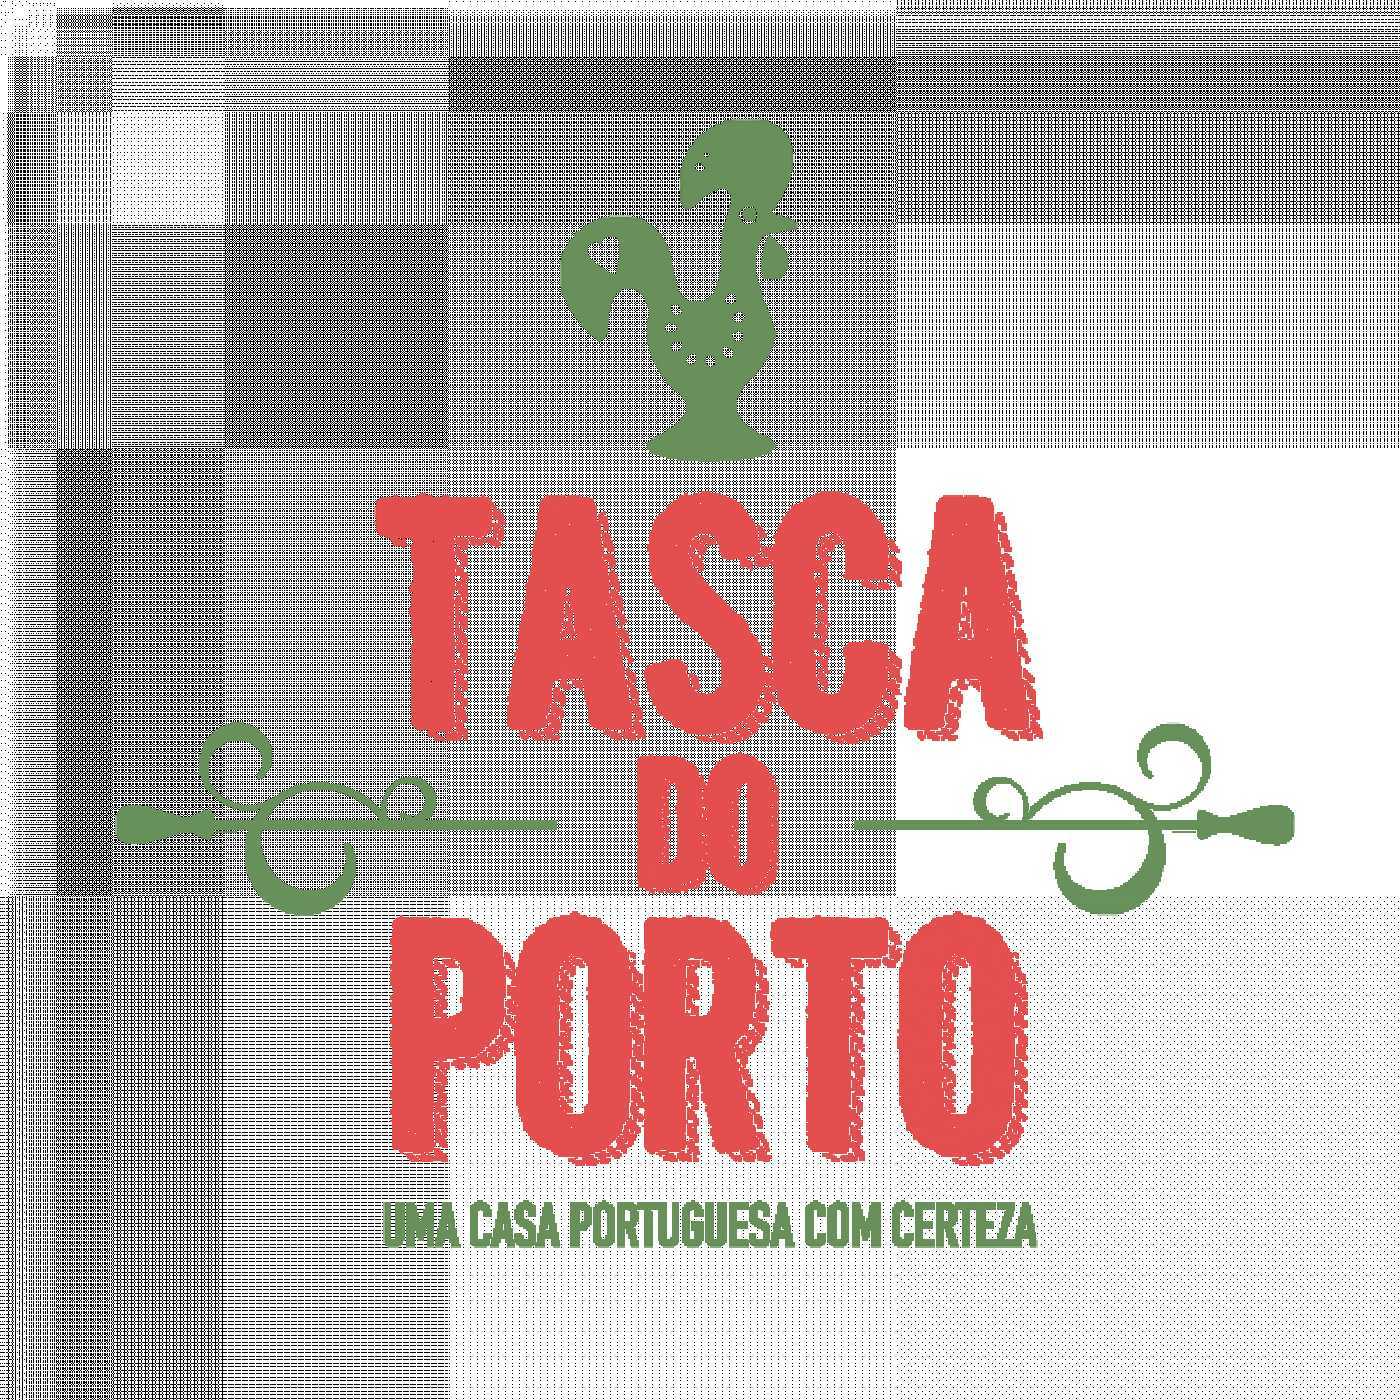 Tasca do Porto